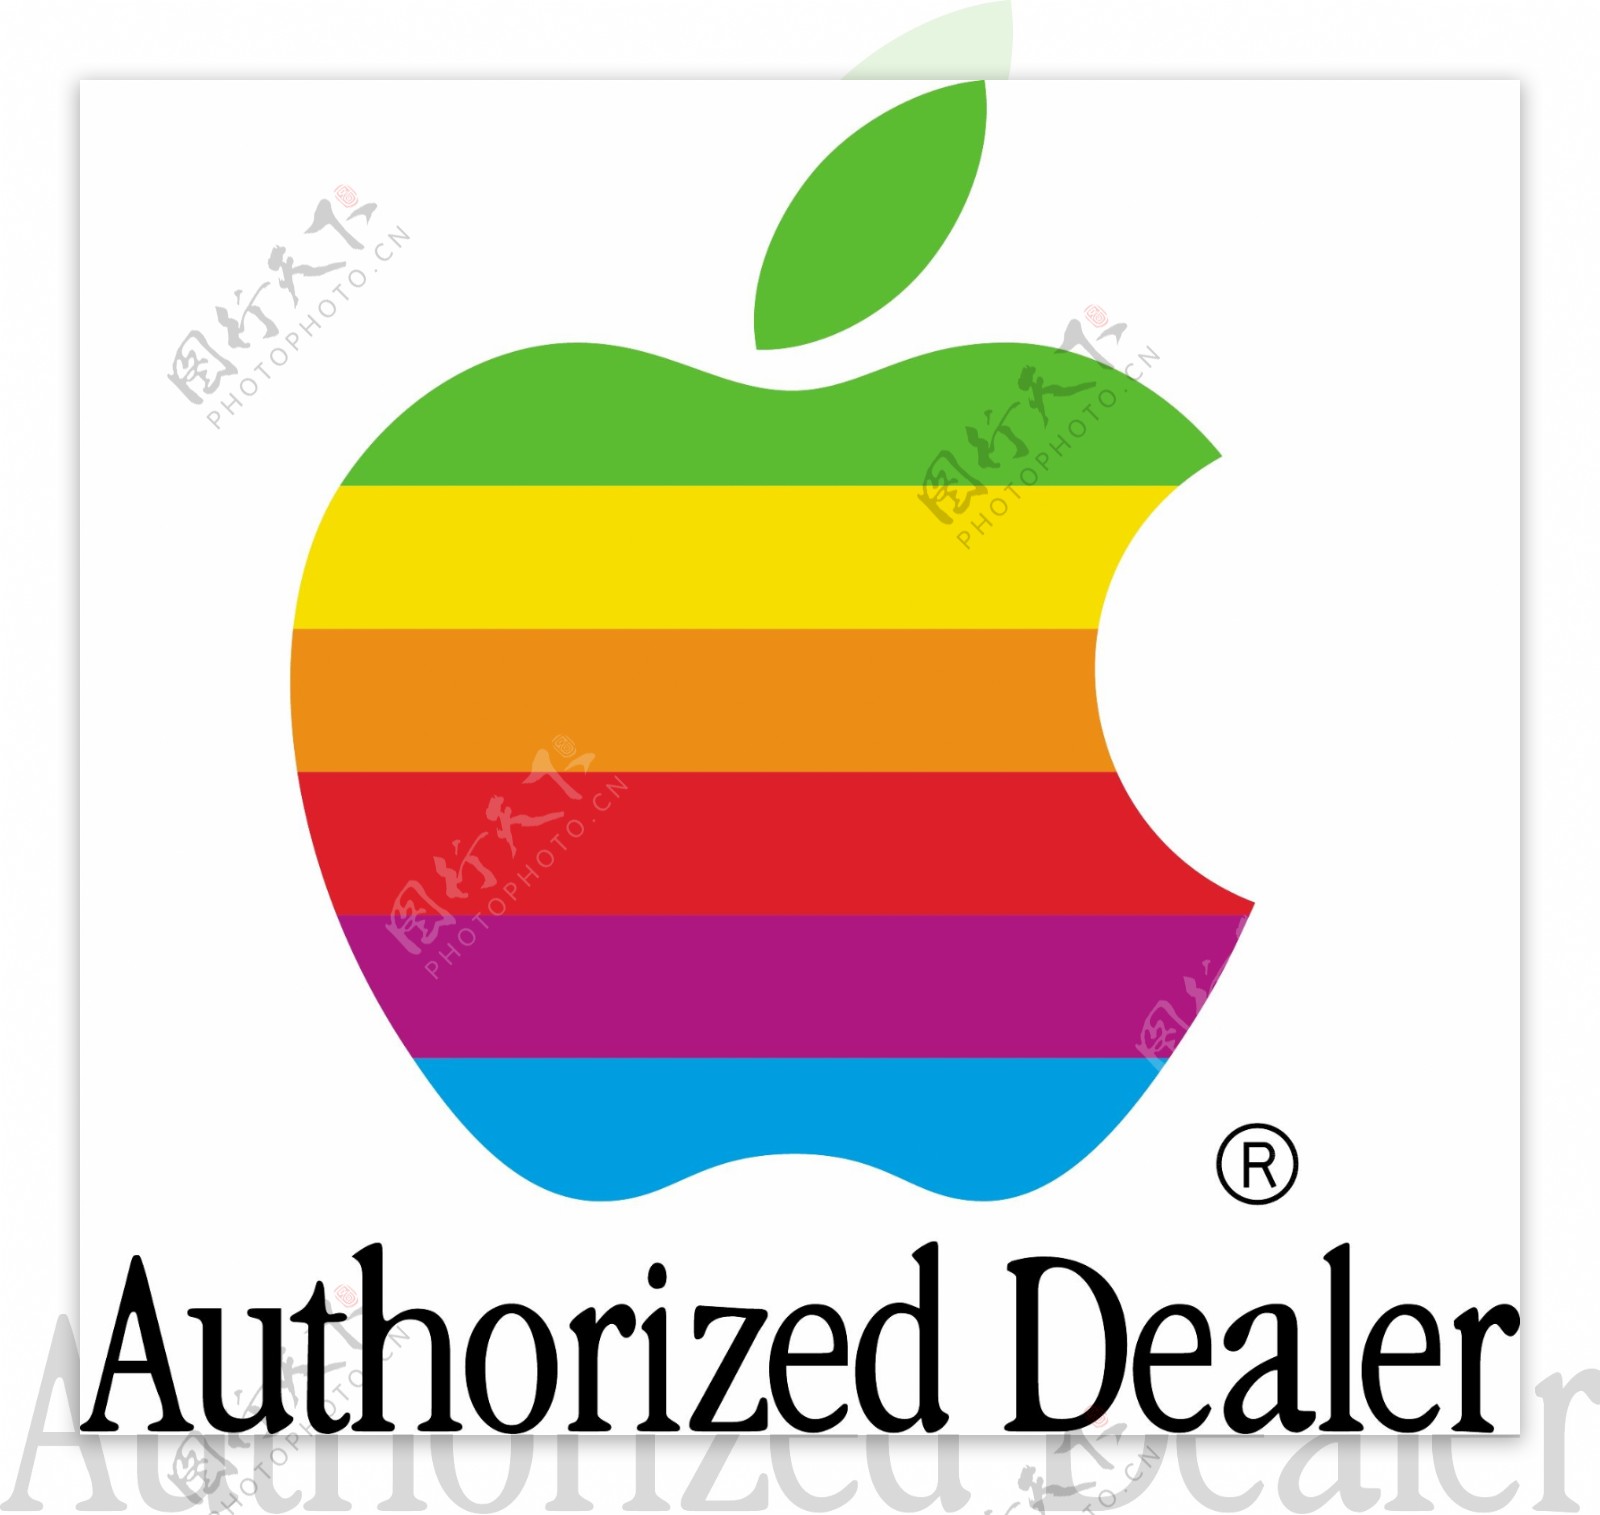 苹果授权经销商的标志